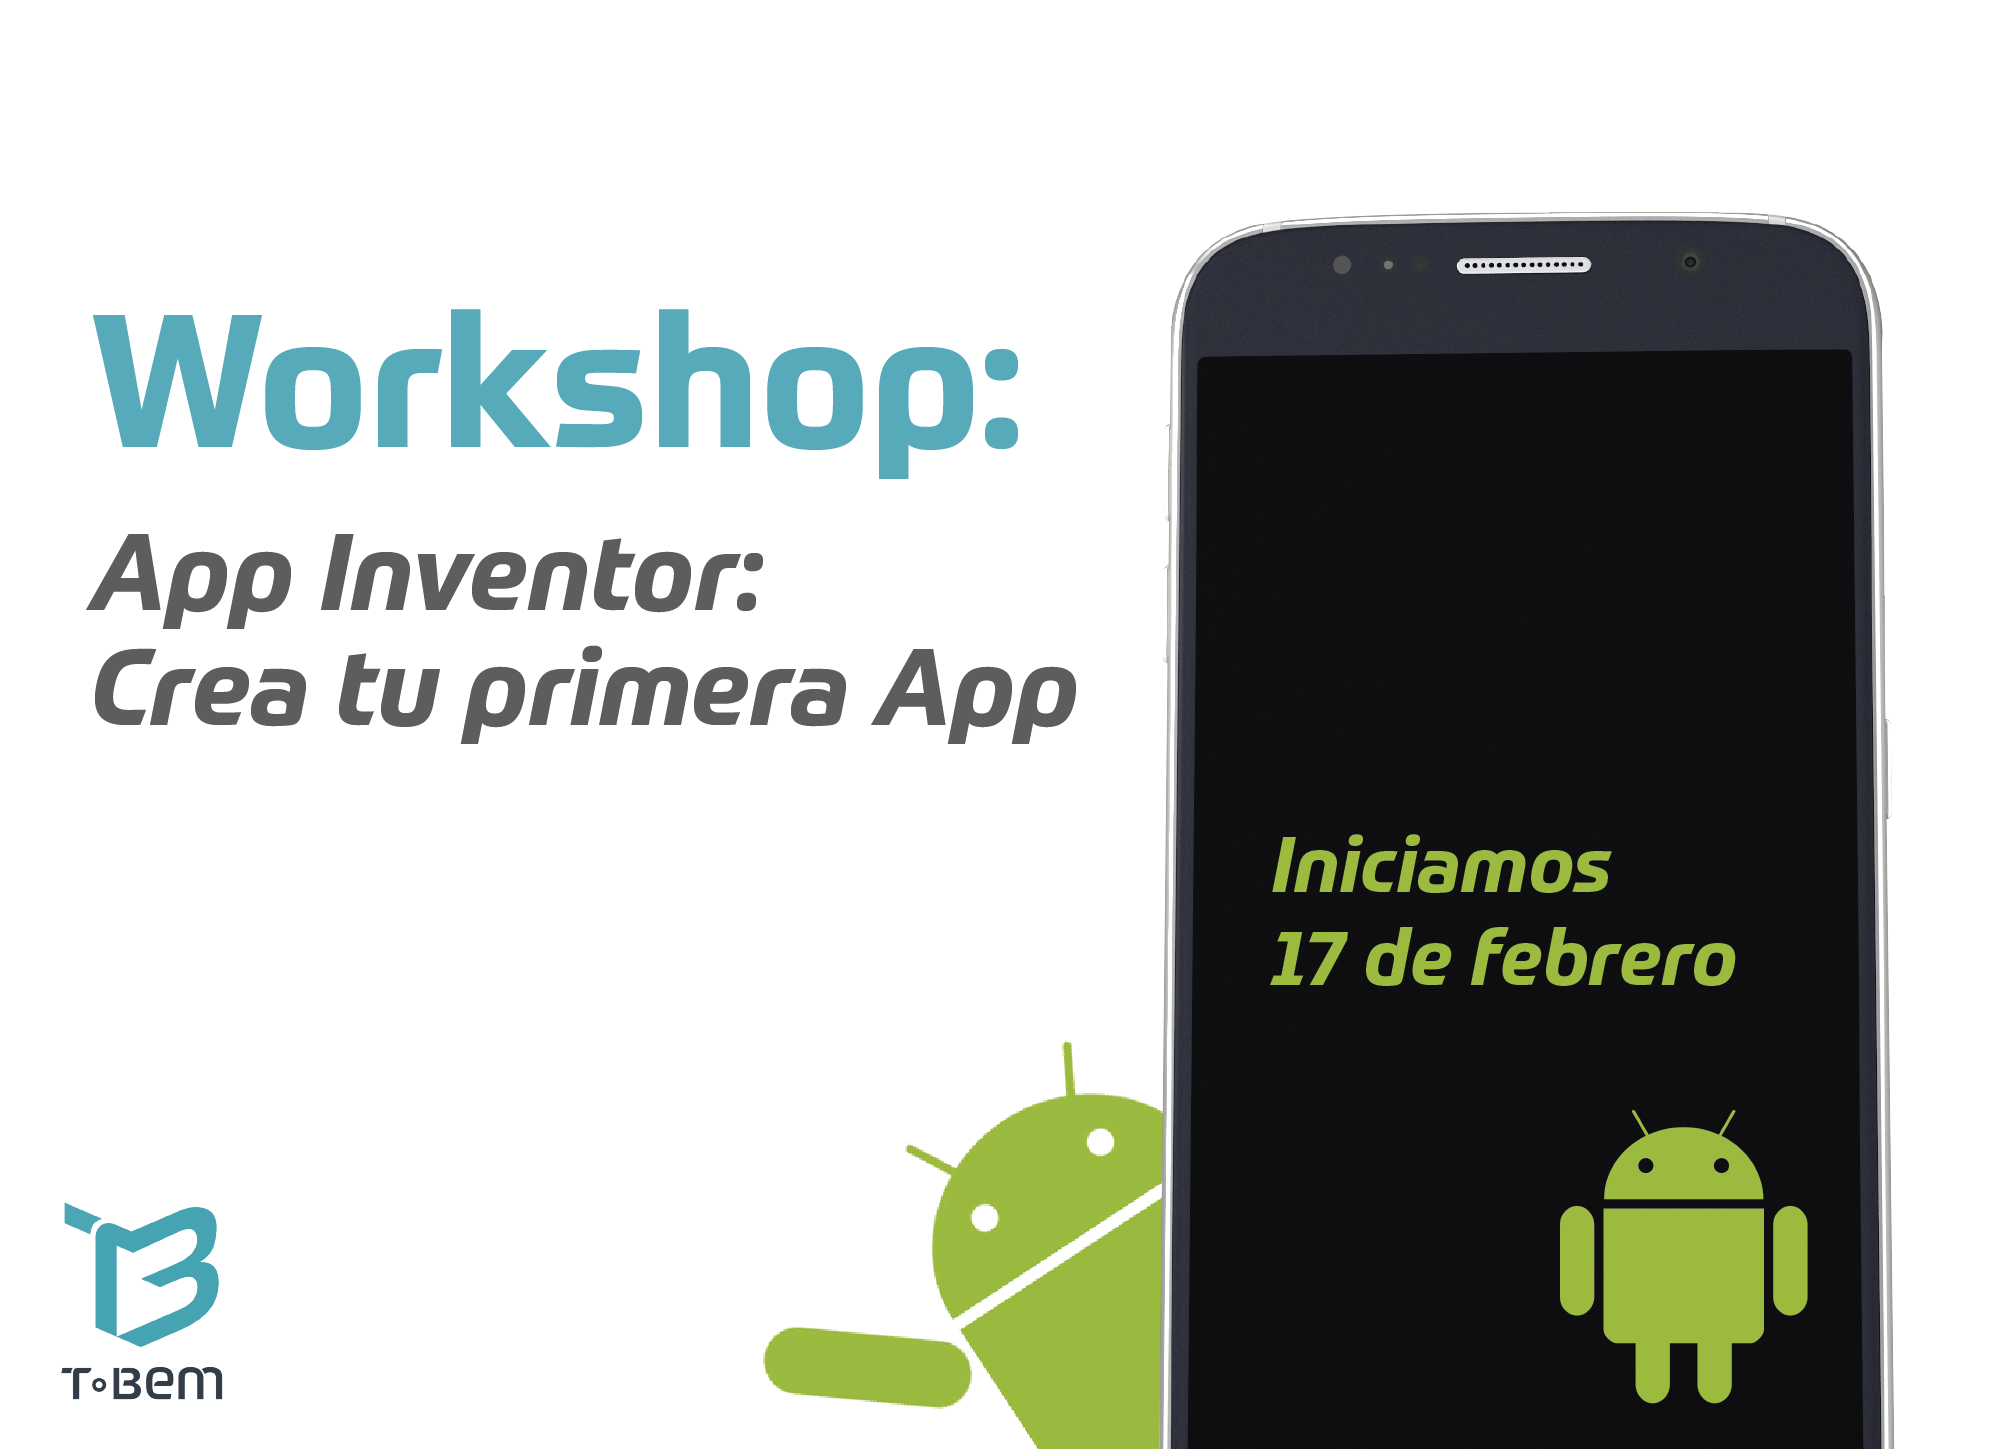 Workshop App Inventor.